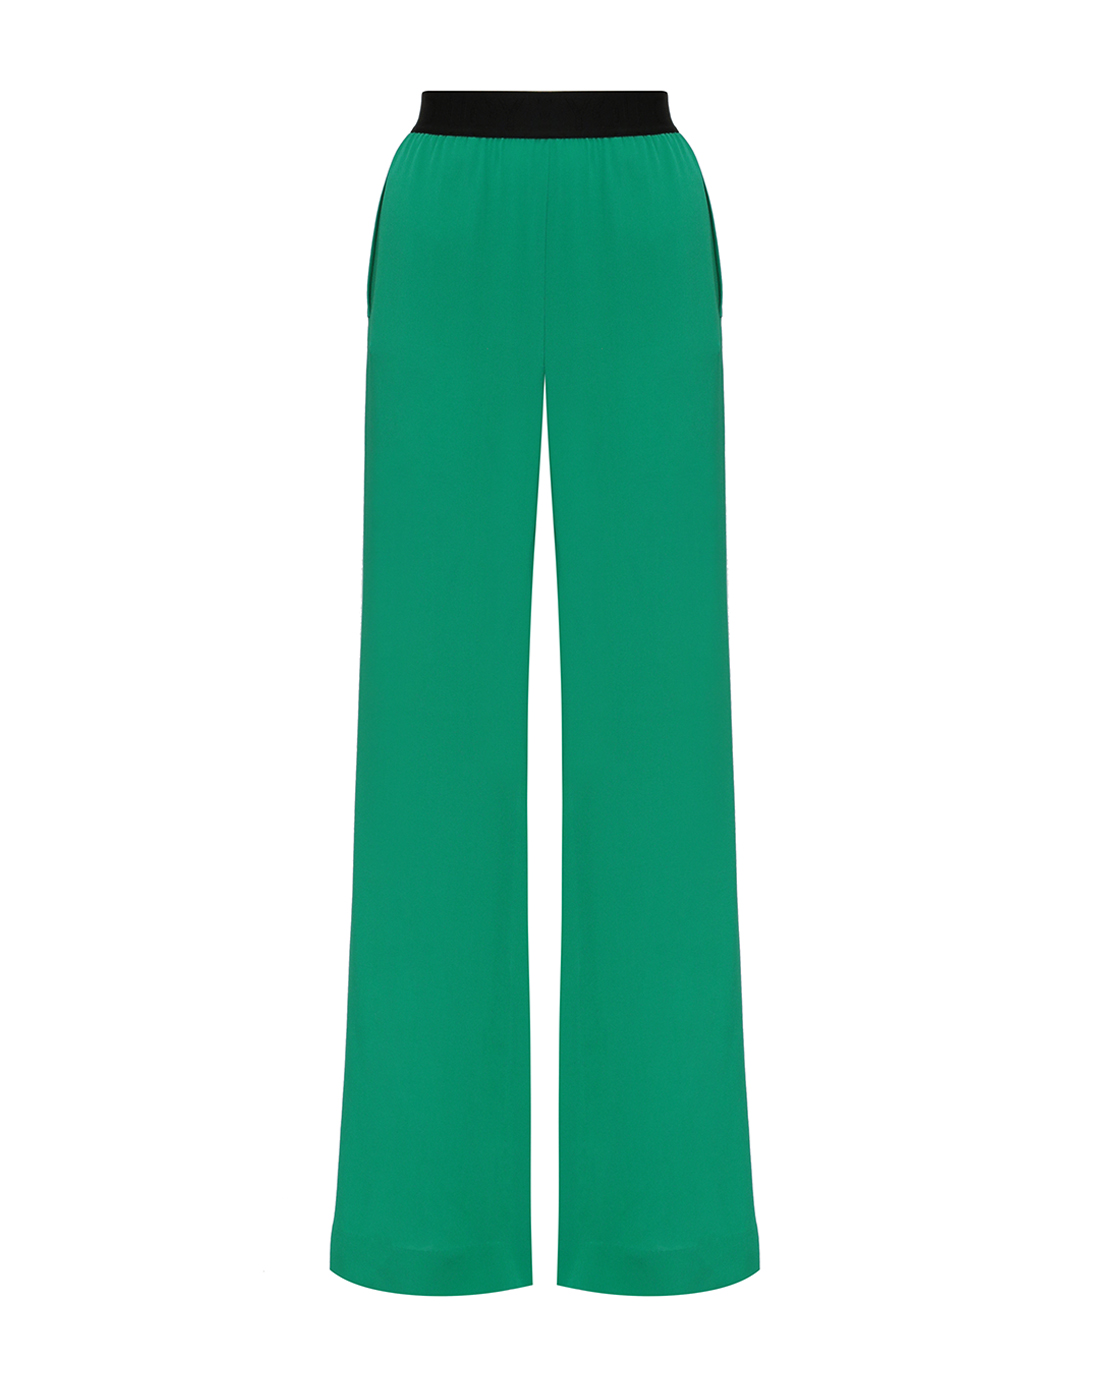 Женские зеленые шелковые брюки Dorothee Schumacher S649003/555-1